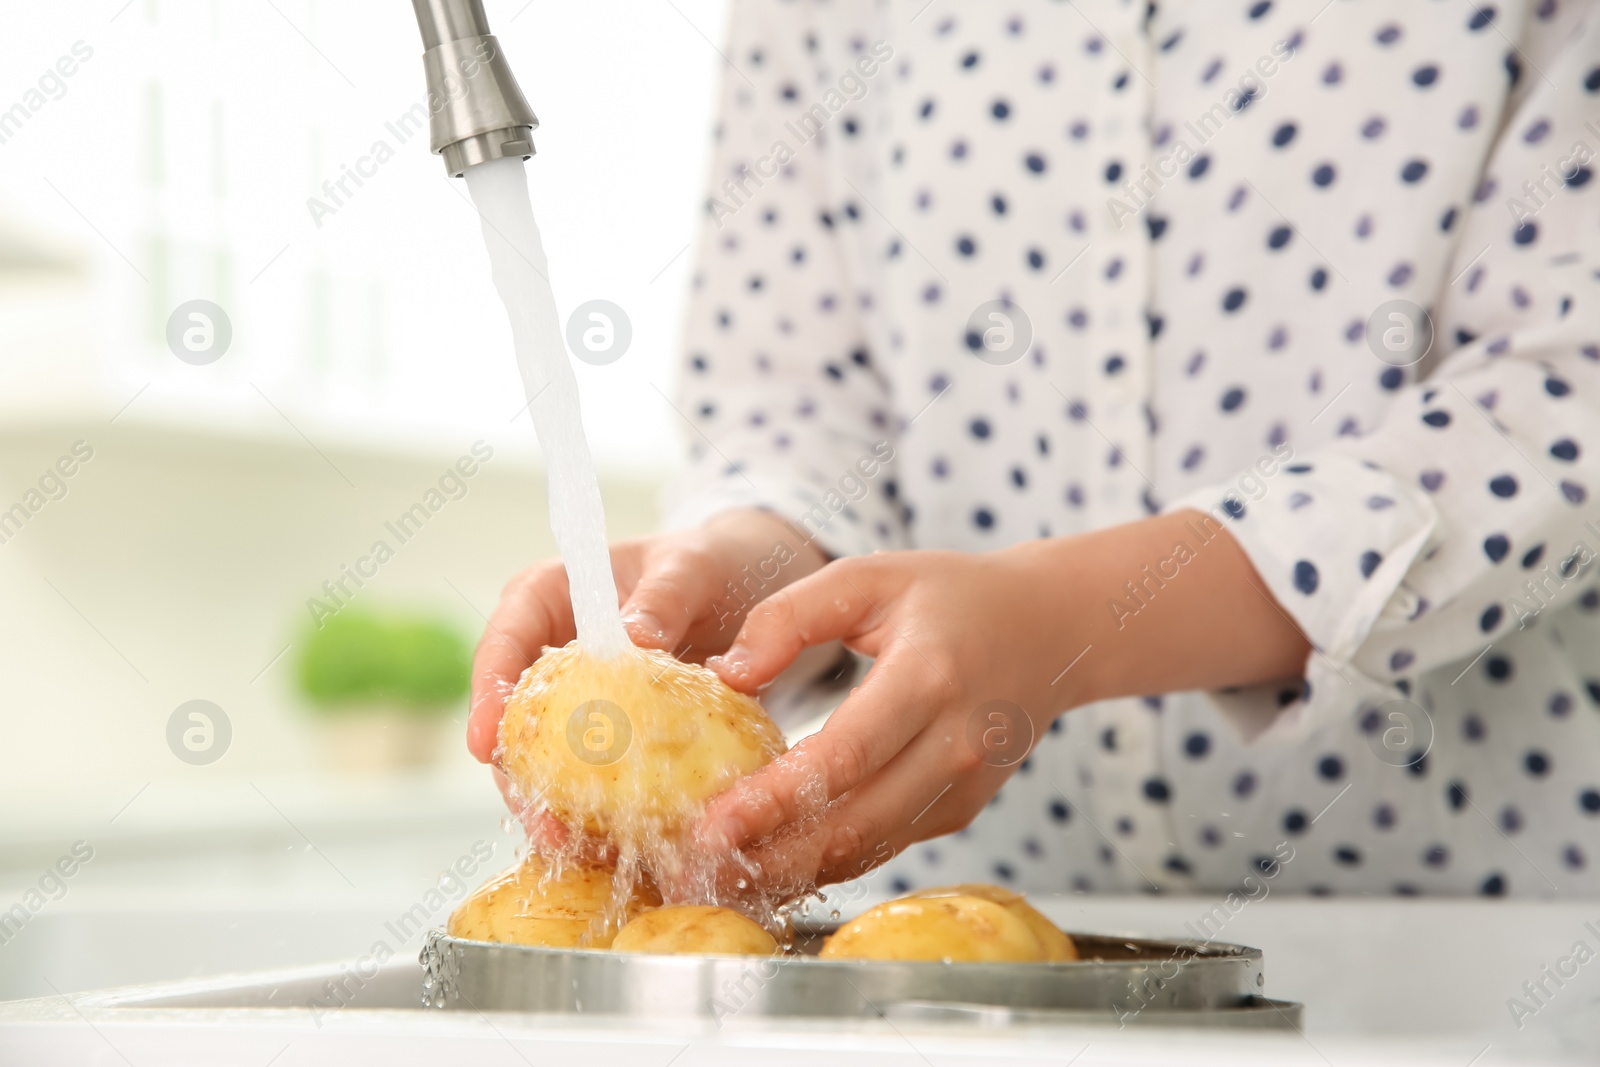 Photo of Woman washing fresh potatoes in kitchen sink, closeup